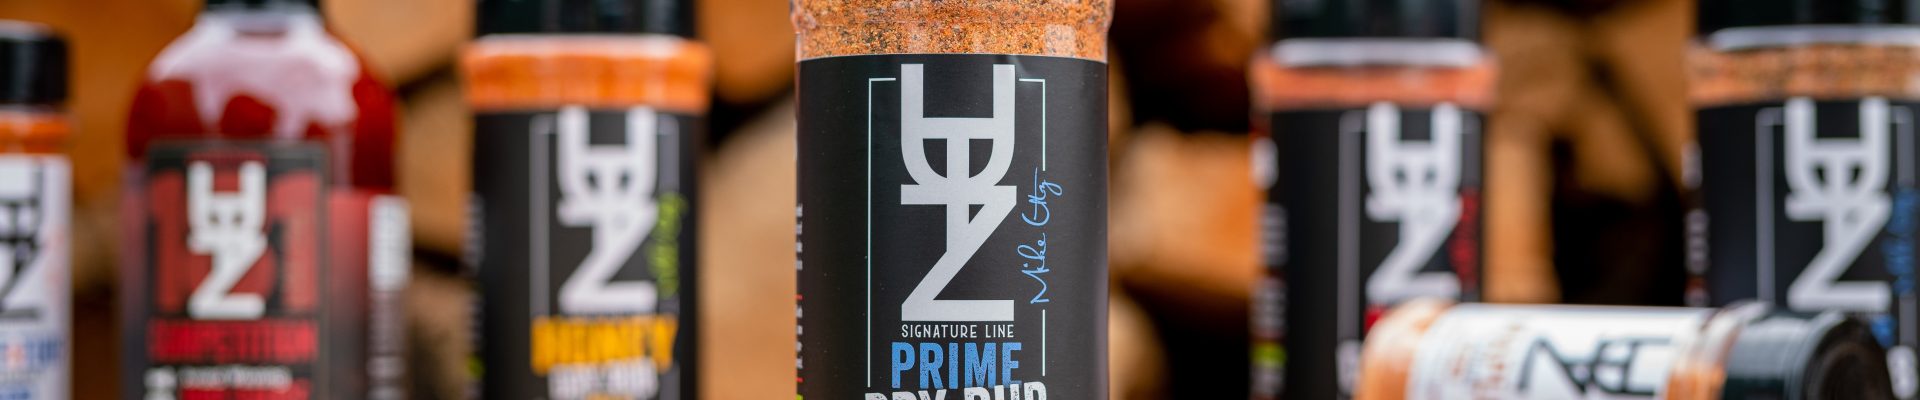 Prime “#3”  BBQ Seasoning Rub Large 14oz